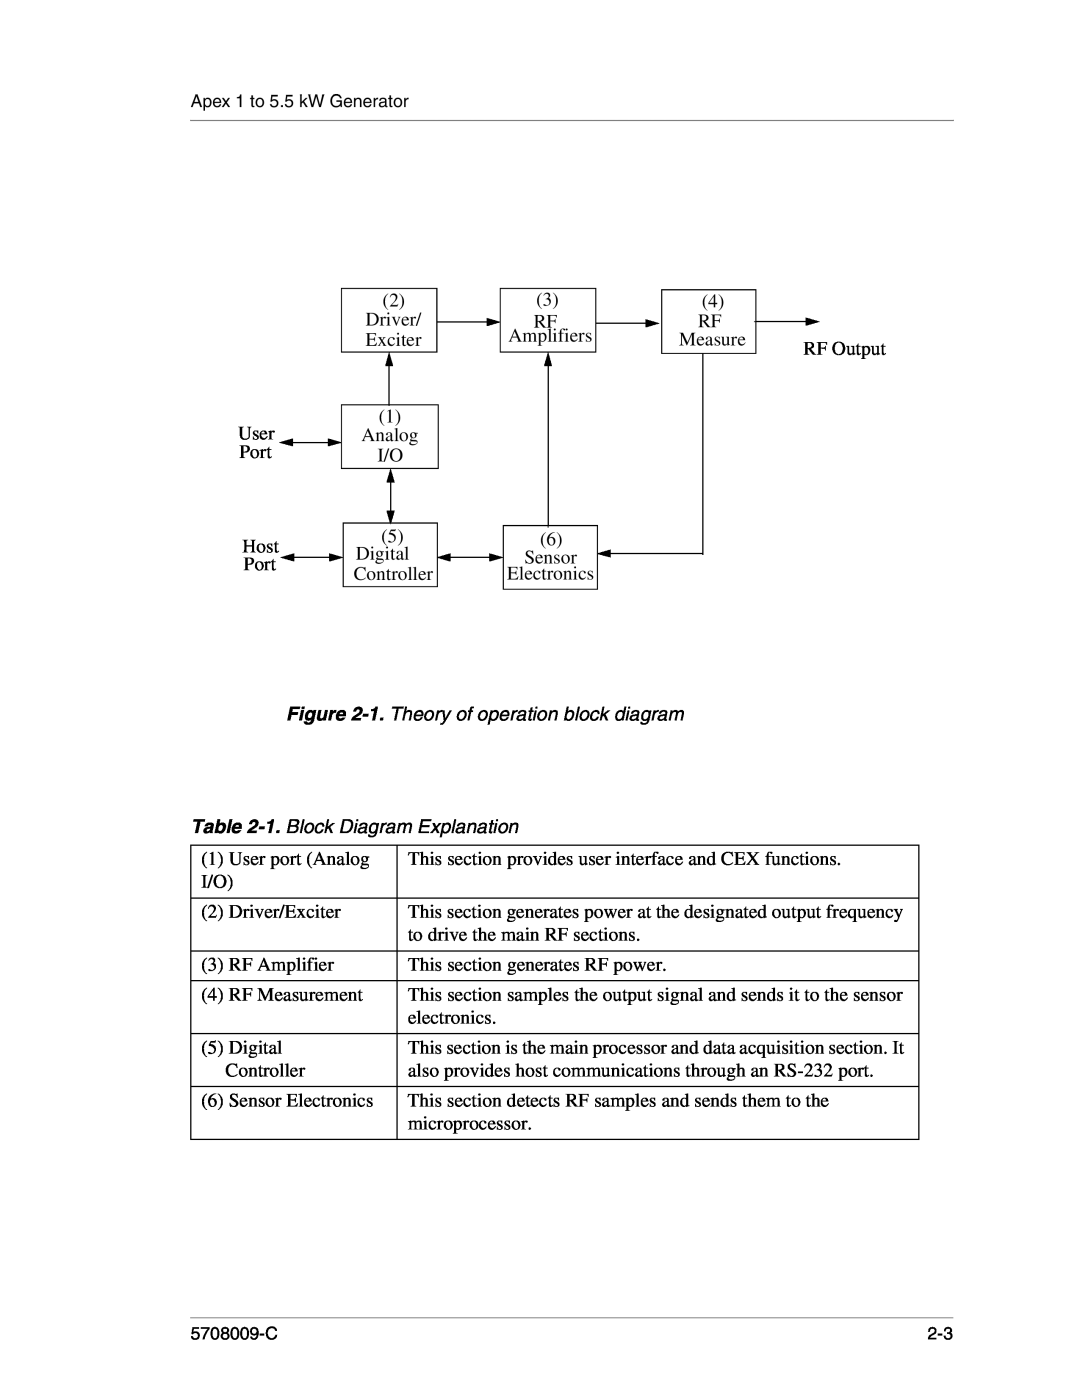 Apex Digital 5708009-C manual 1. Theory of operation block diagram, 1. Block Diagram Explanation, Measure 